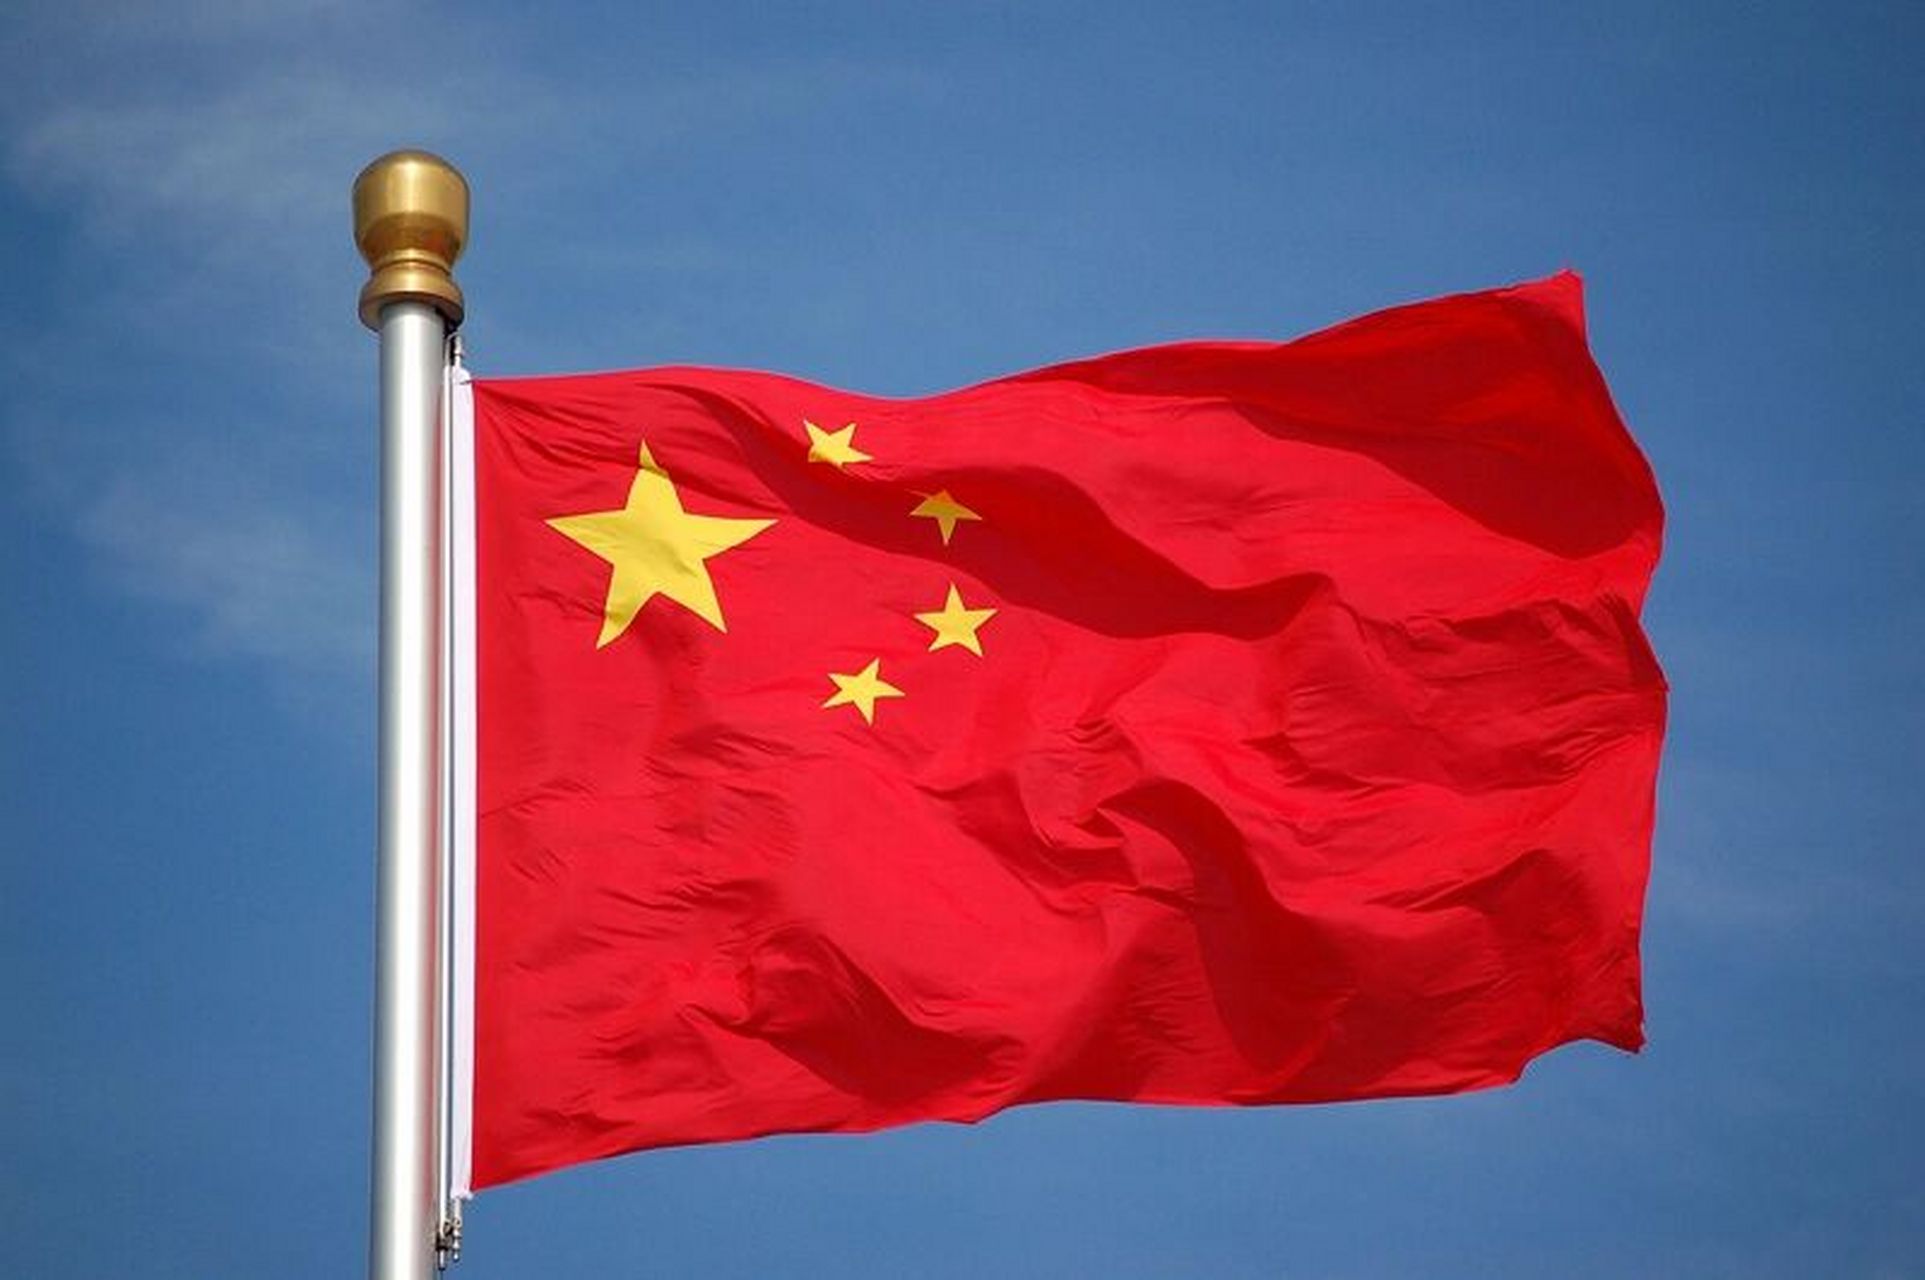 五星红旗迎风飘扬 明天是你的生日 我的中国 六张飘扬的五星红旗 我的